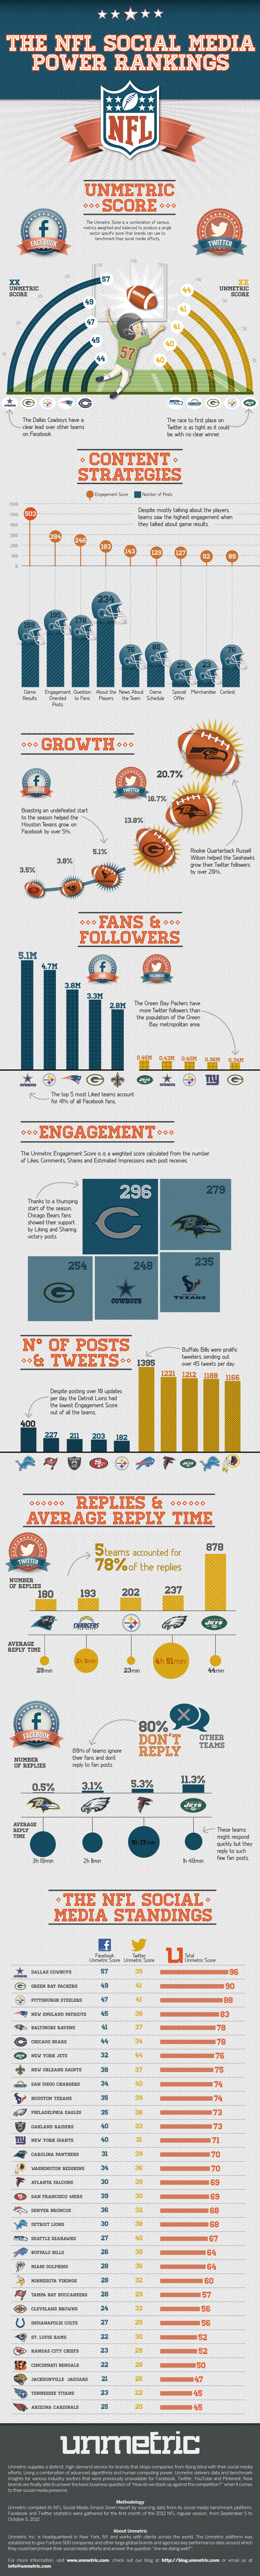 The NFL Social Media Power Rankings